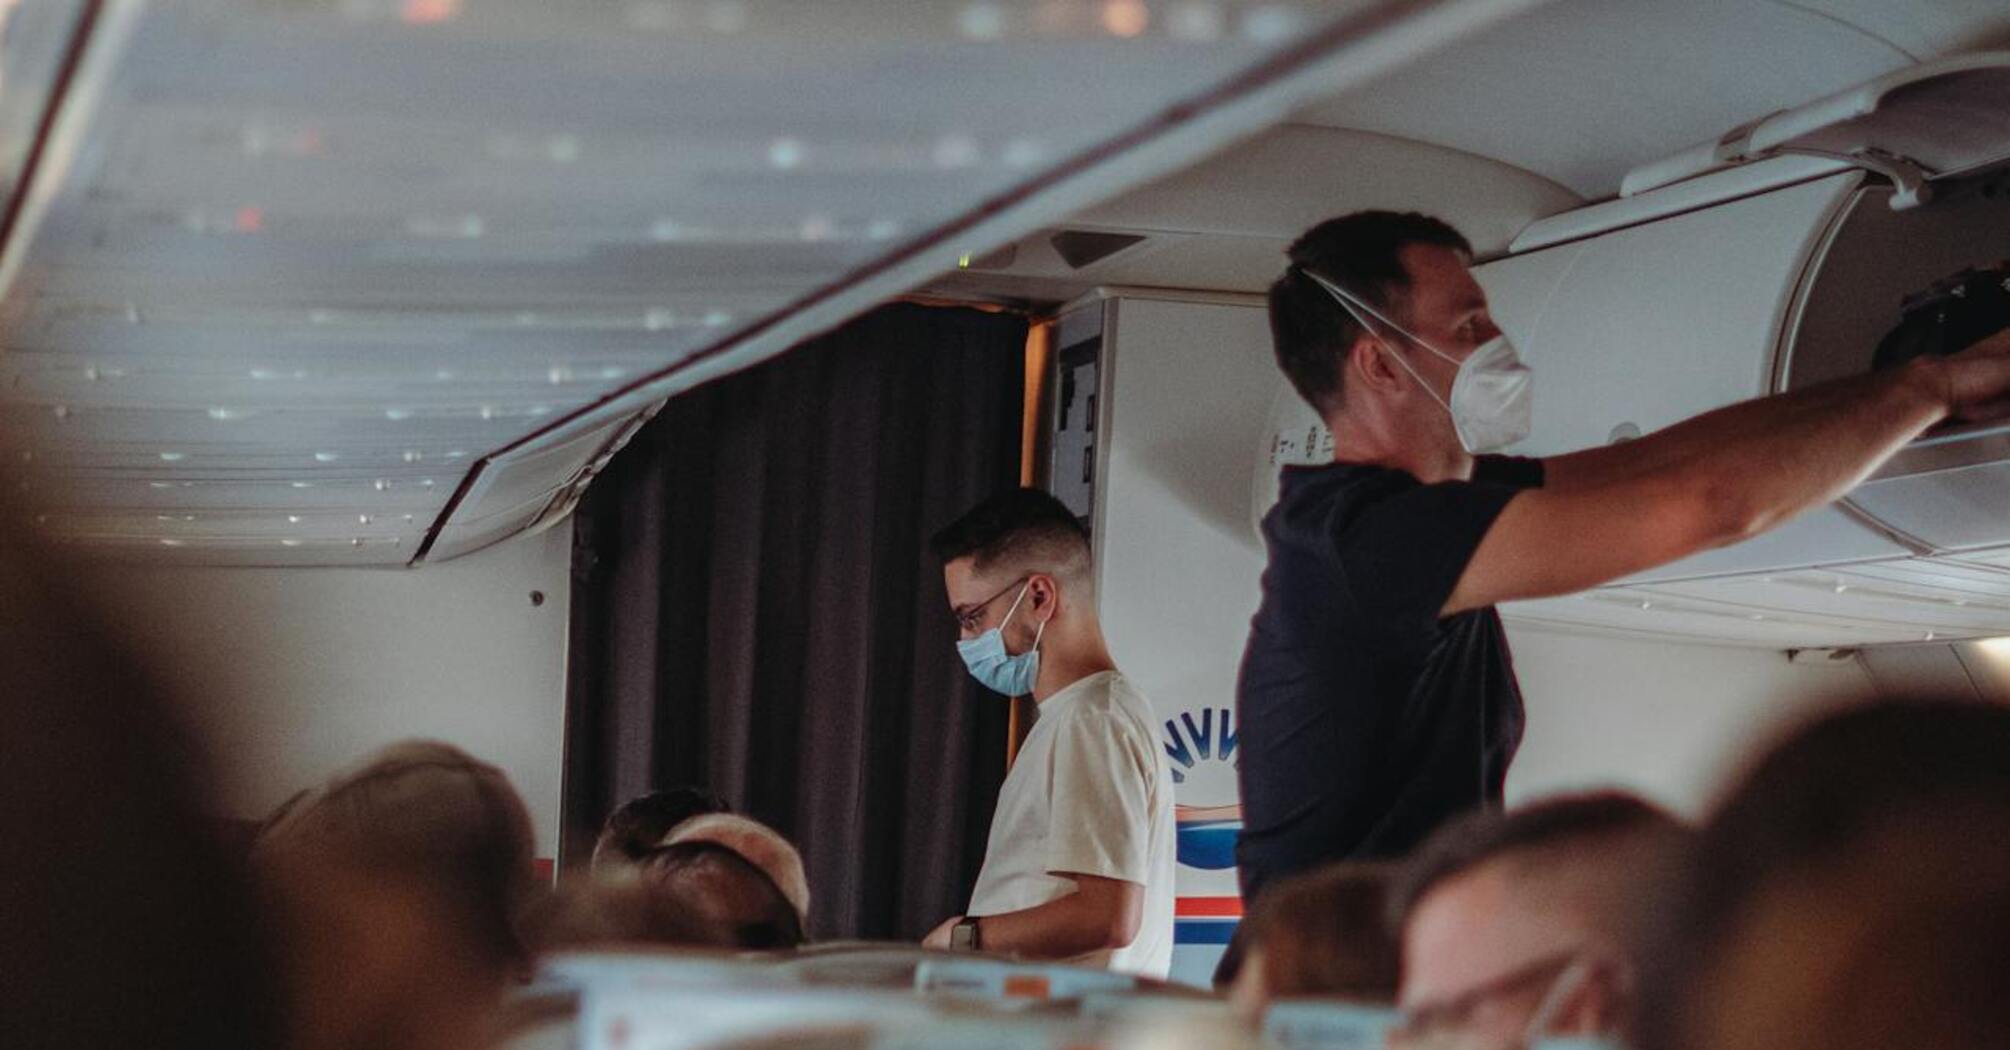 Аварийная ситуация в самолете: пассажирам напомнили, что делать во время пожара, декомпрессии и других выпадах